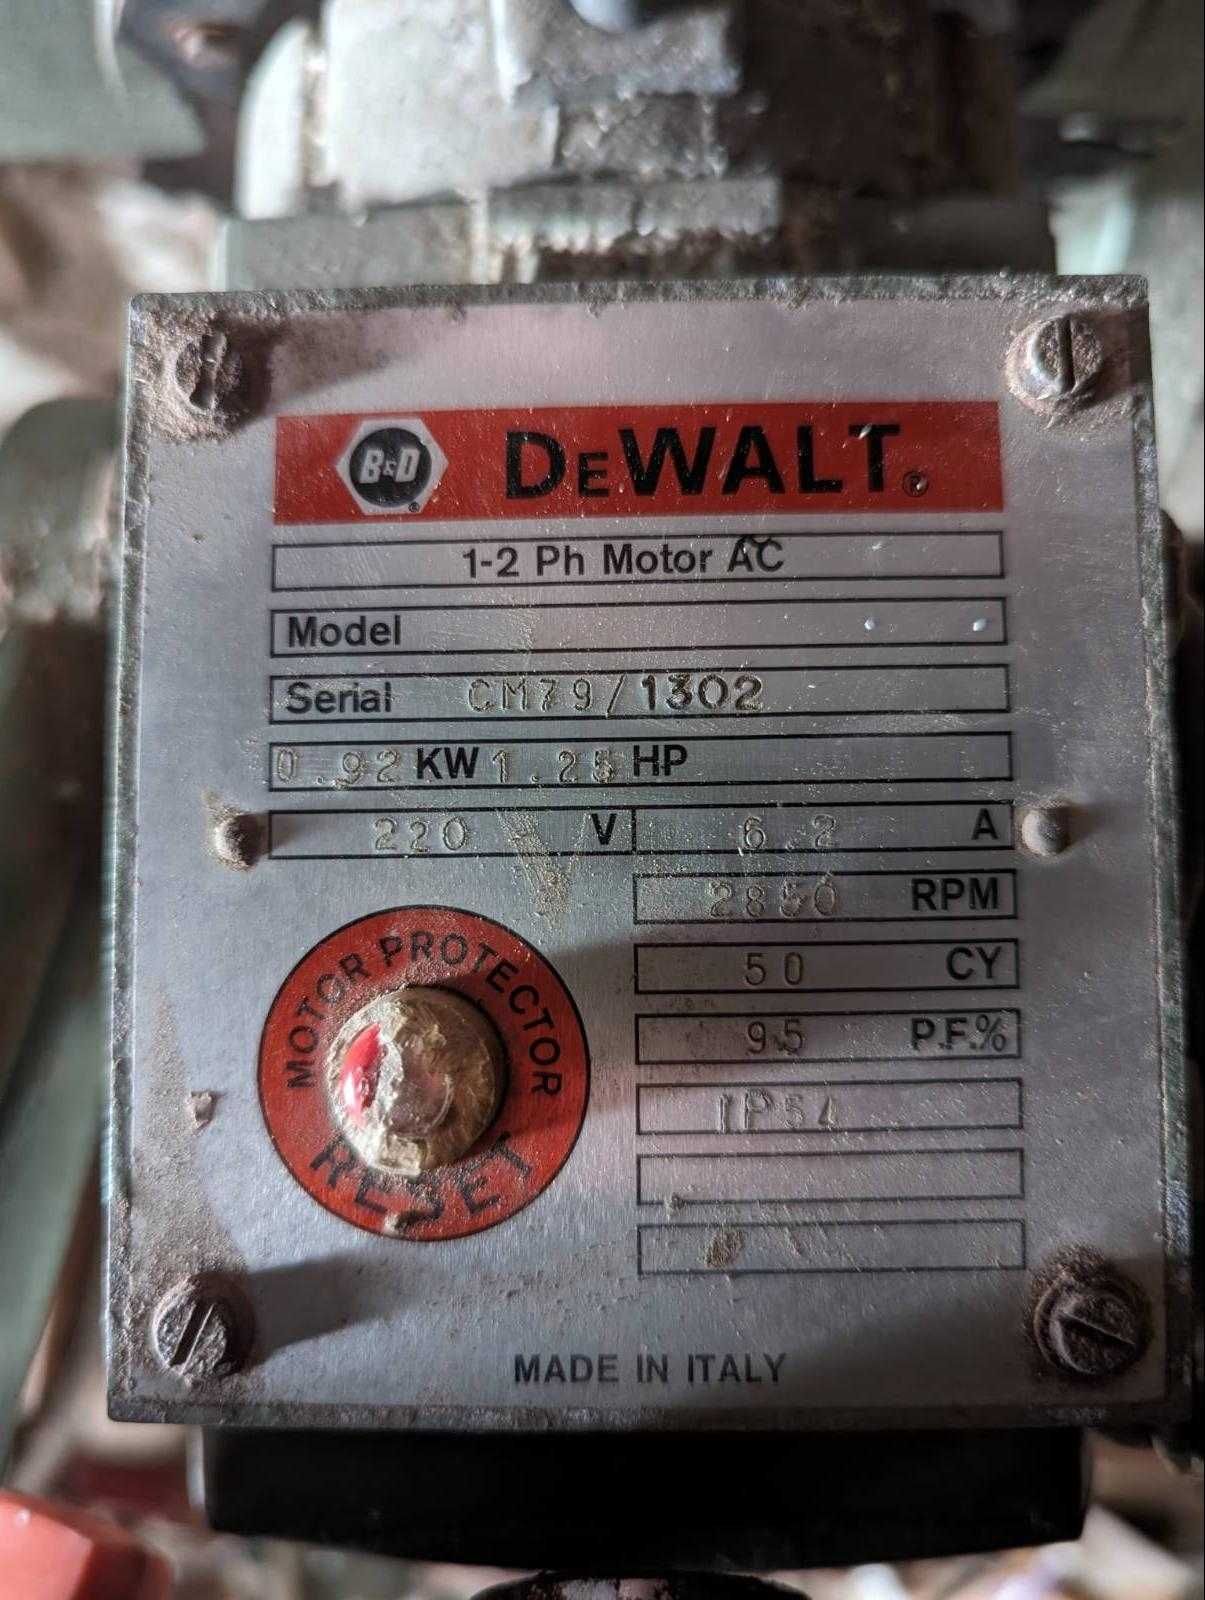 Dewalt, ukośnica, 0.92 kW, 1979 rok, niezniszczalna, precyzyjna